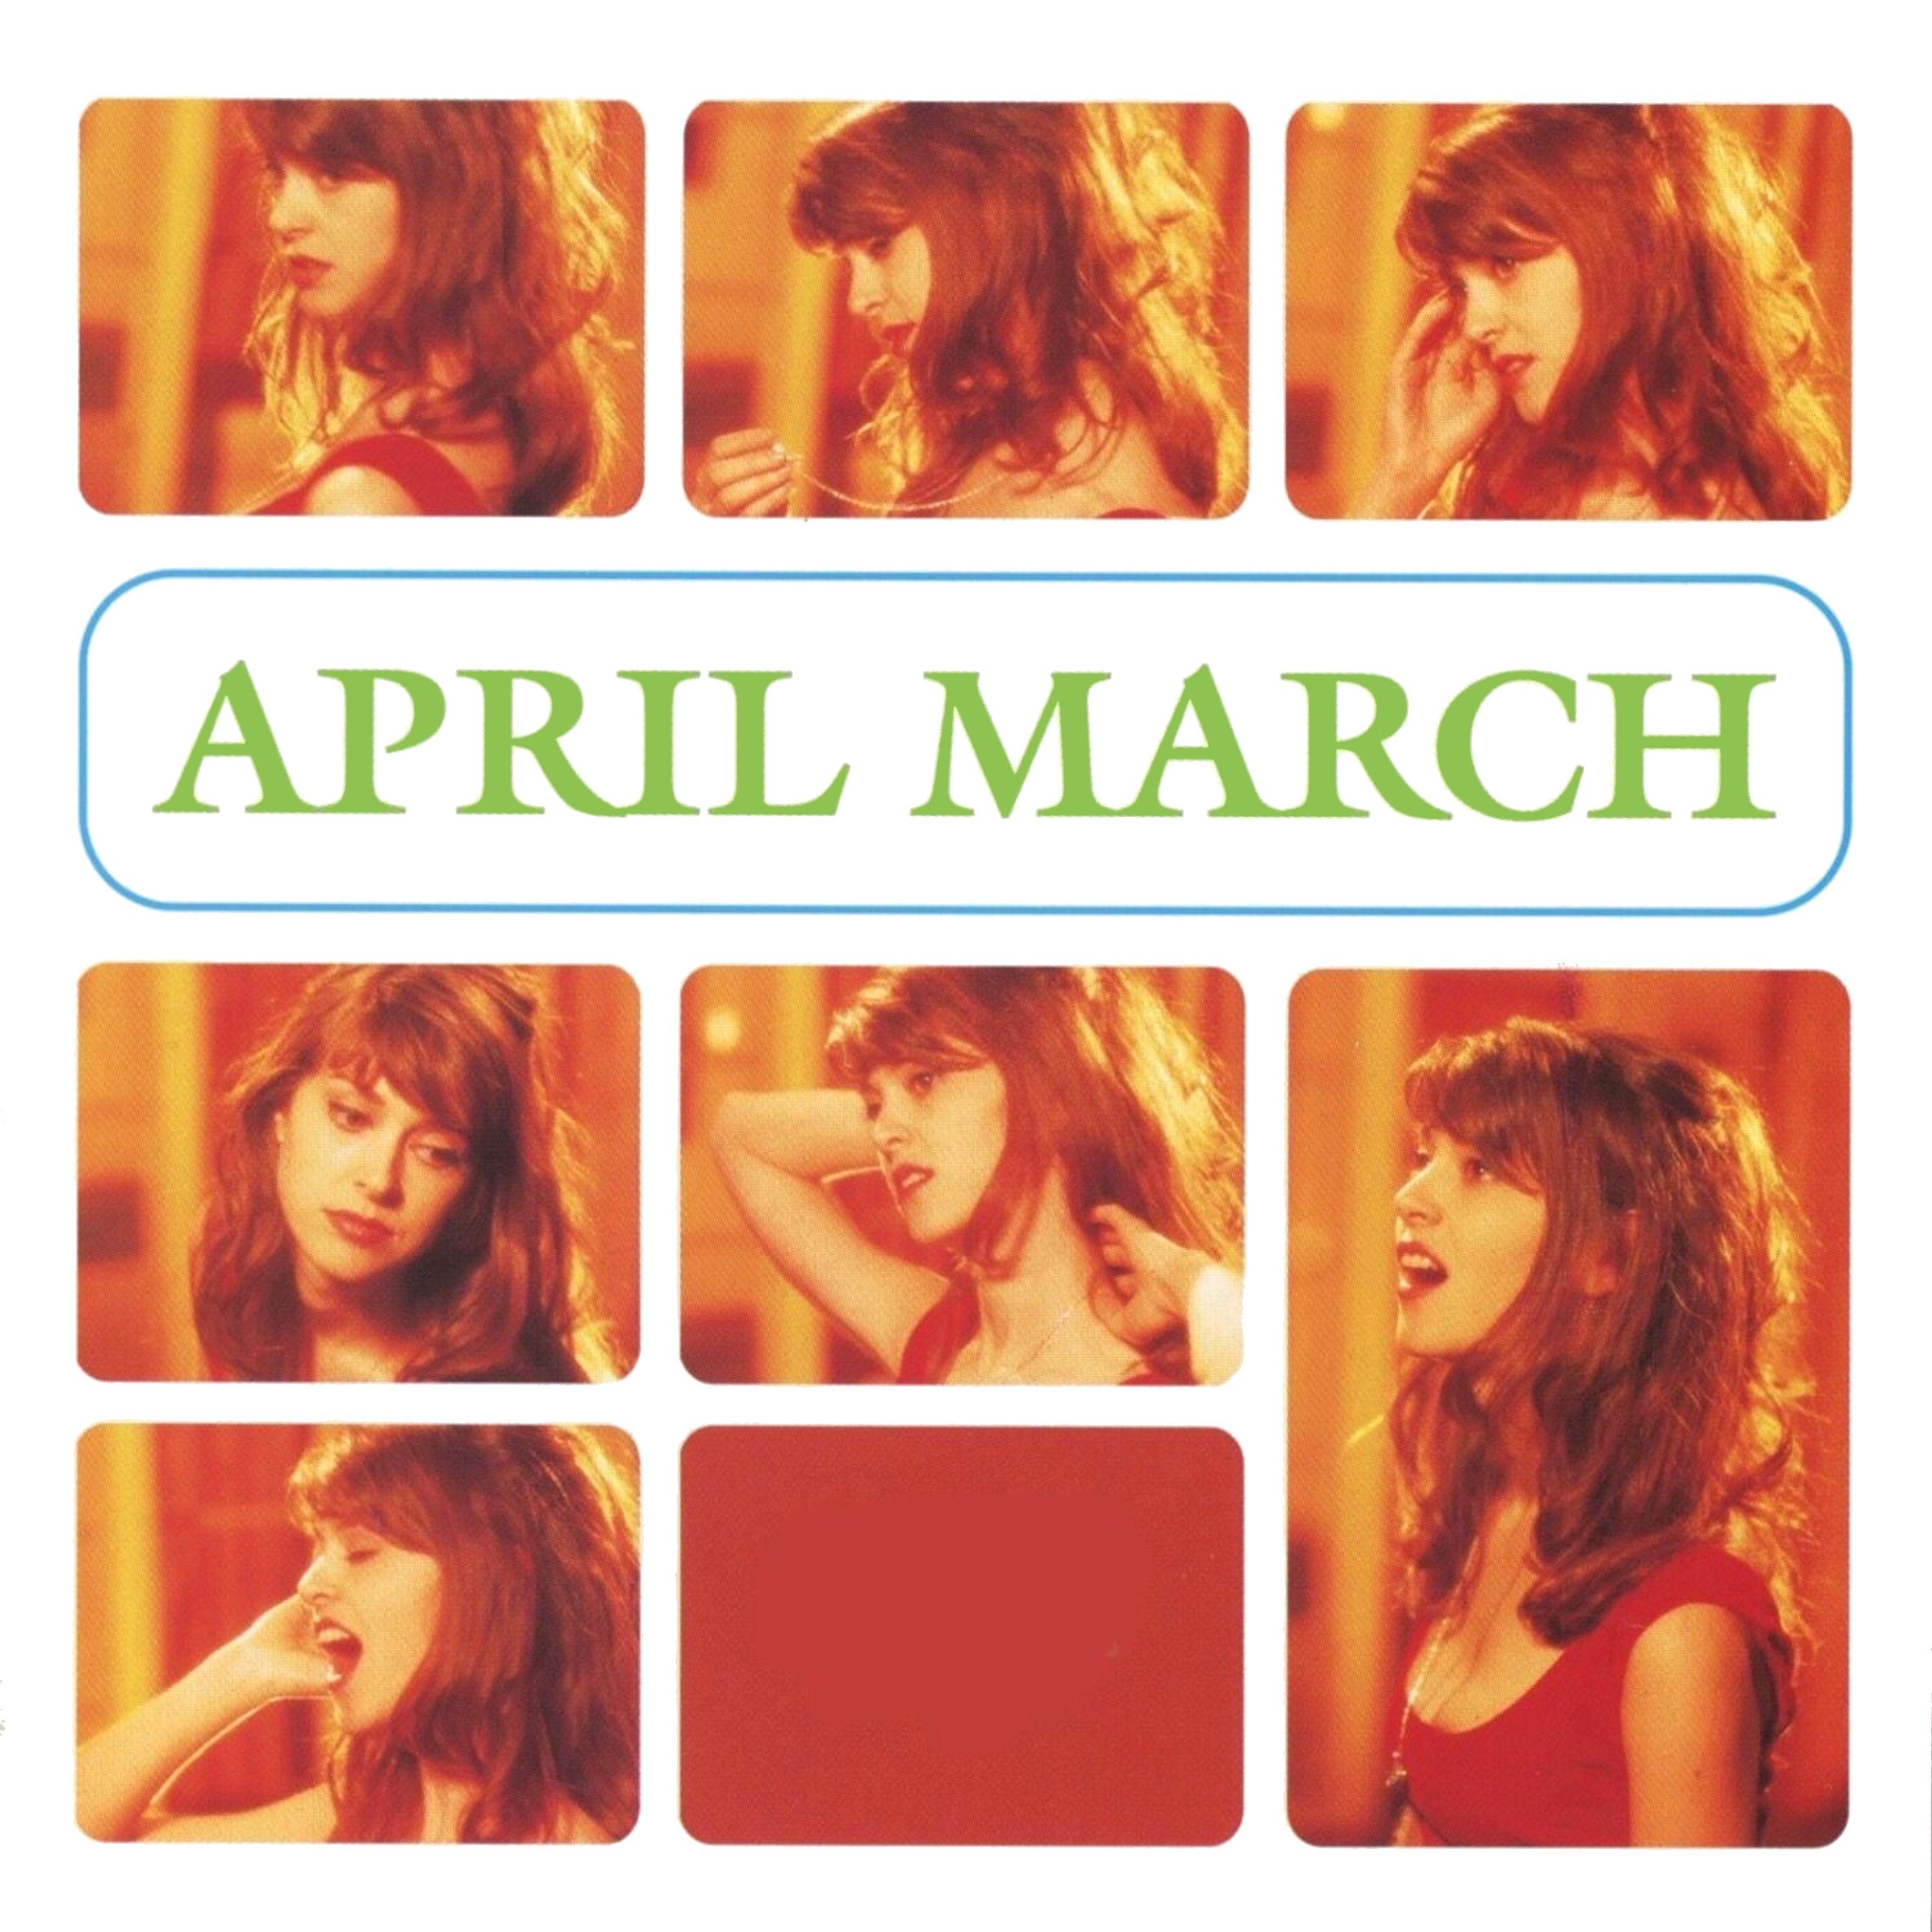 Le temps de l amour. April March. April March chick Habit. April March фото. April March-chick Habit фото.